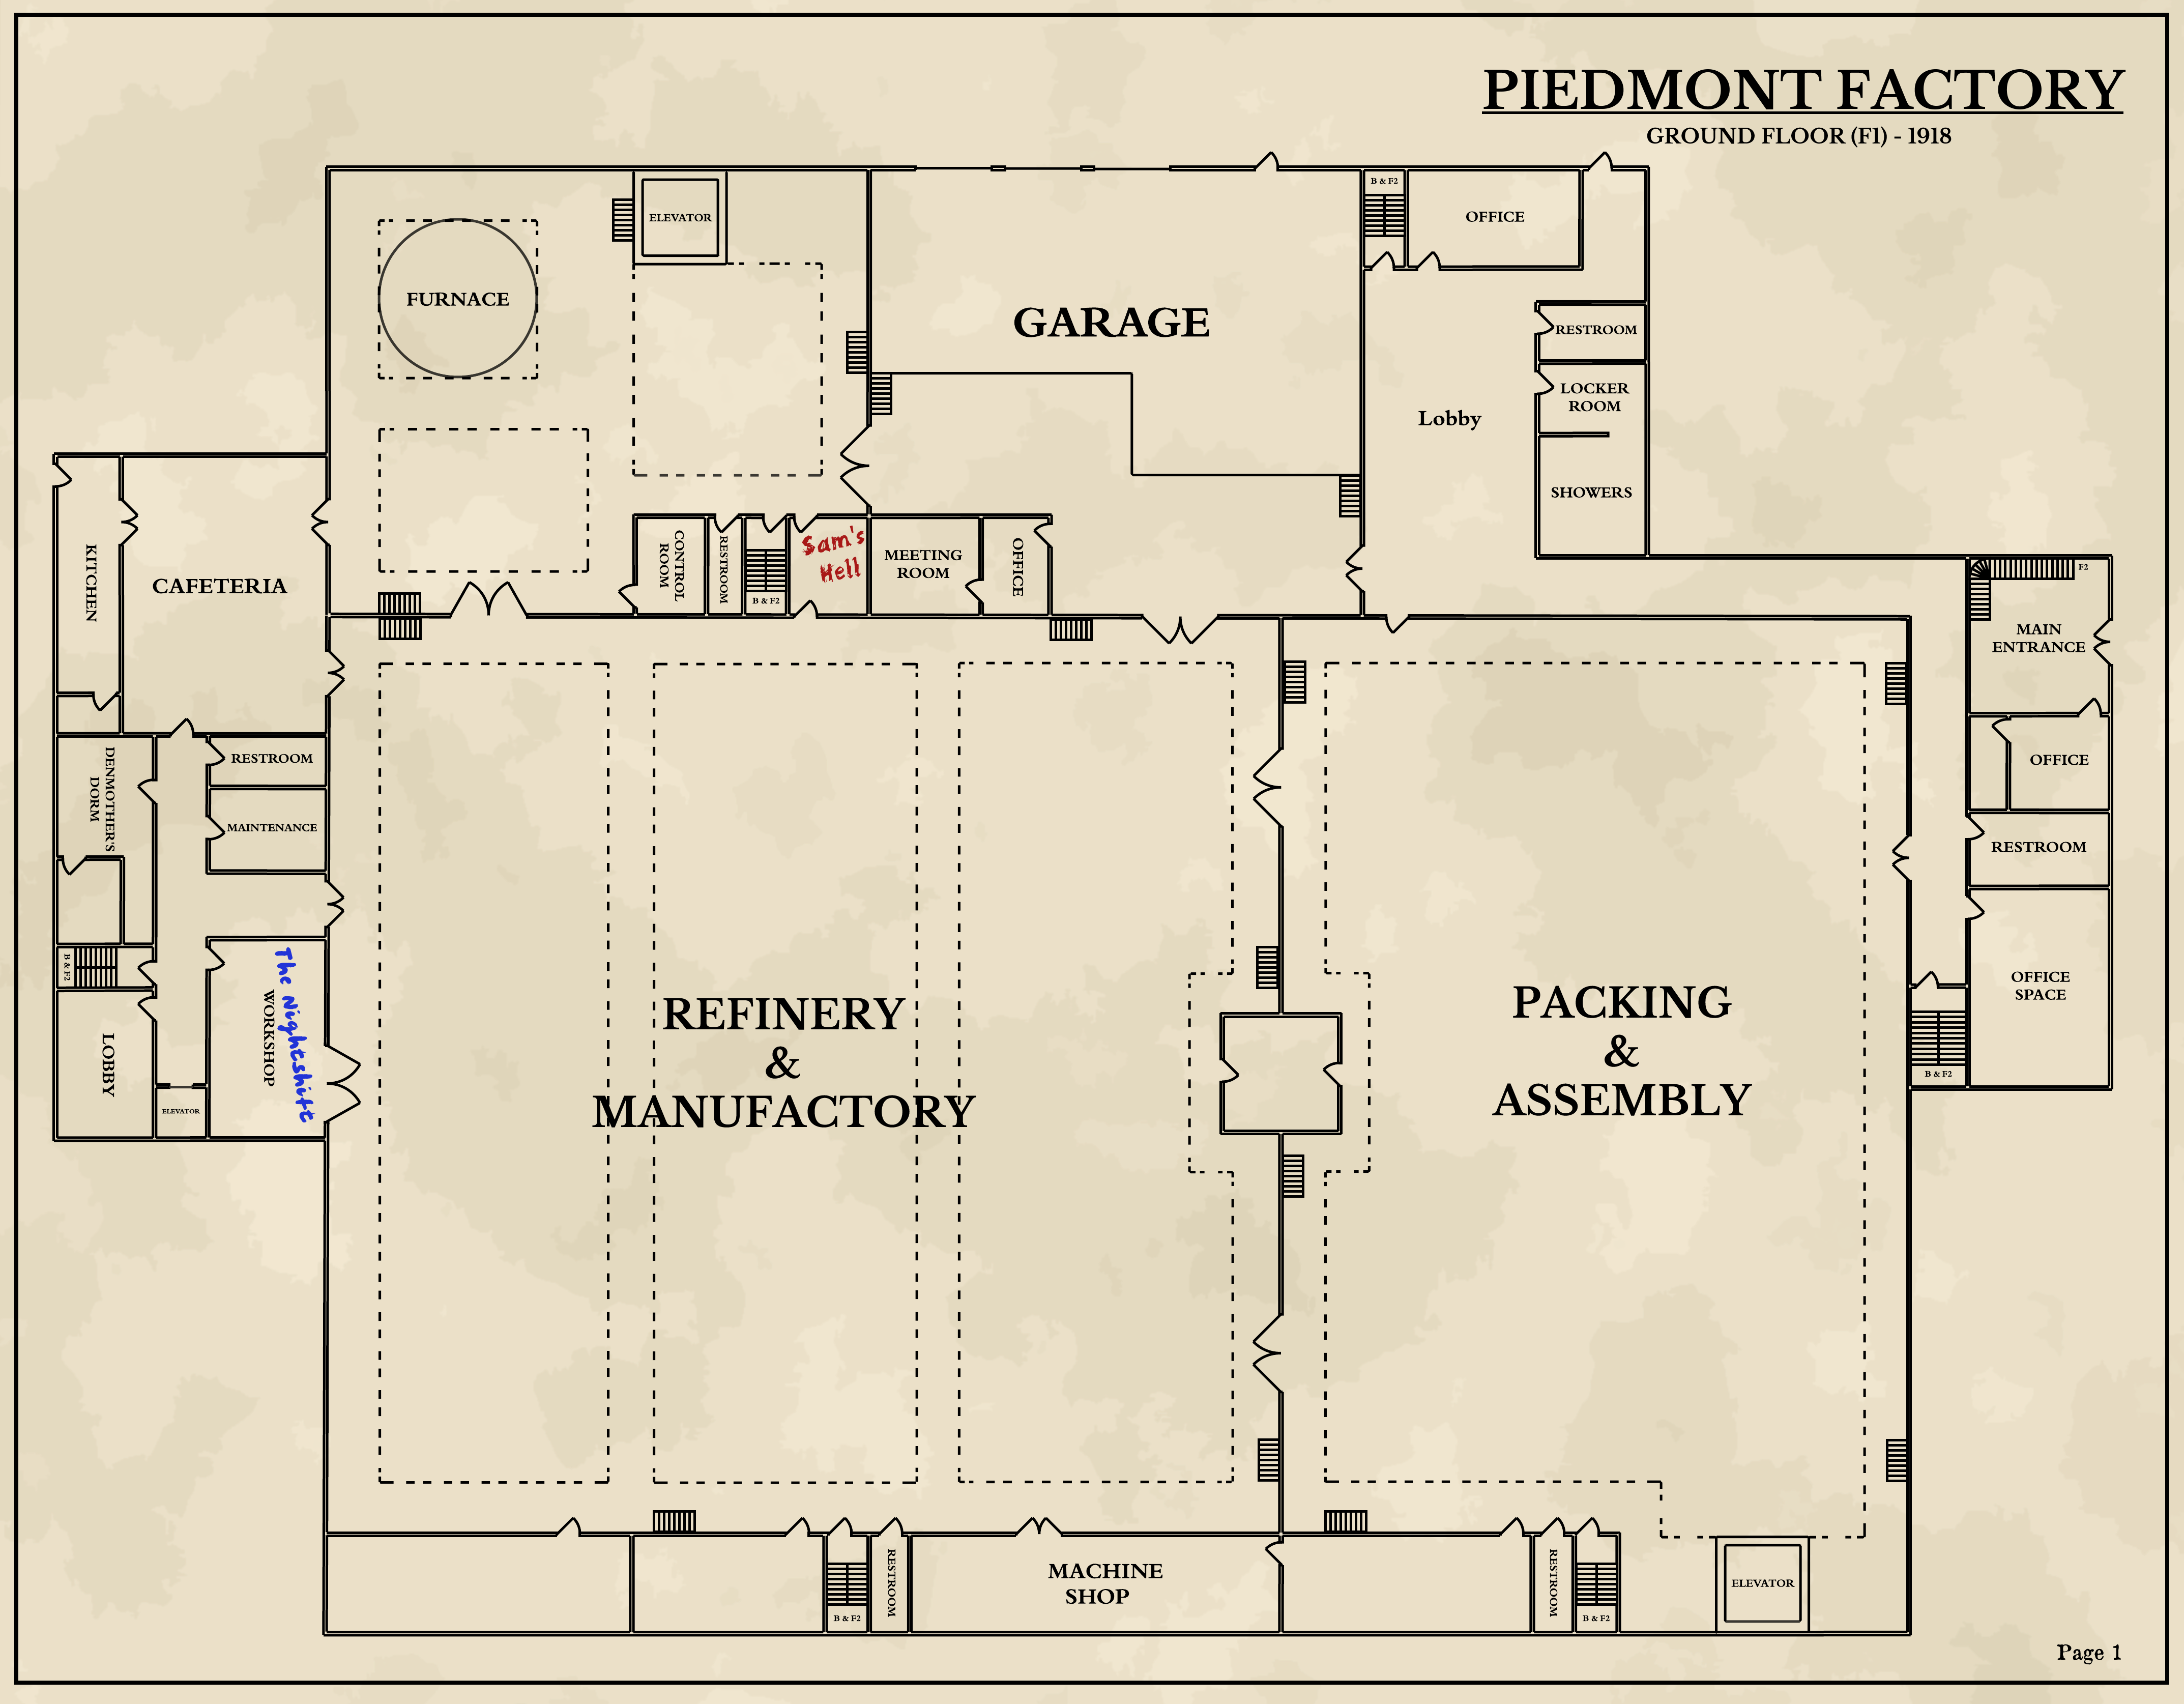 Piedmont Factory: Floor 1